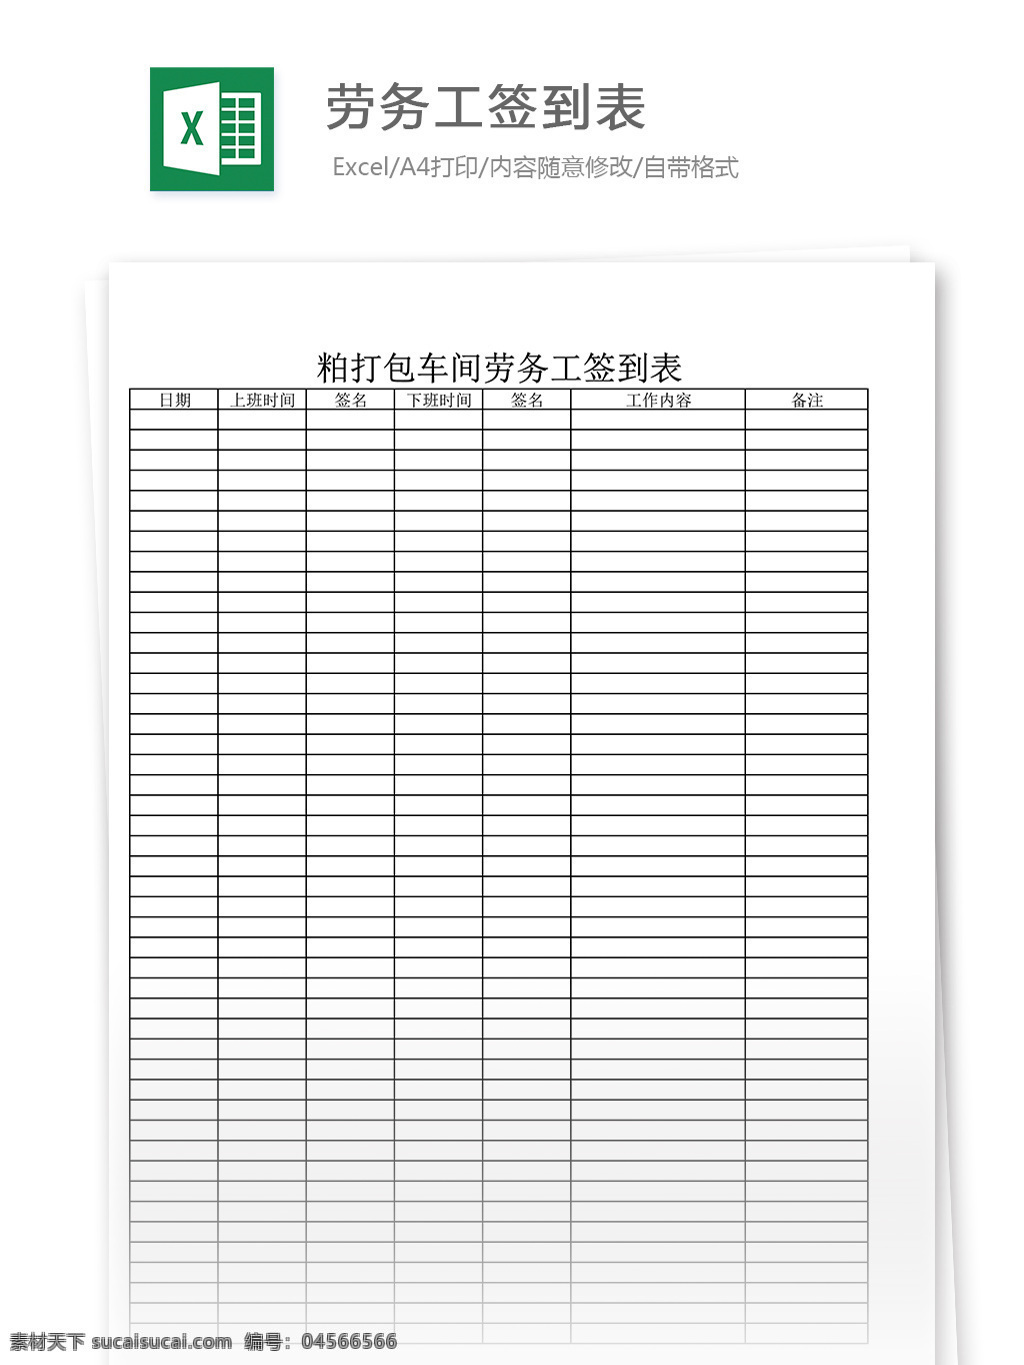 劳务工签到表 表格 表格模板 表格设计 图表 签到表